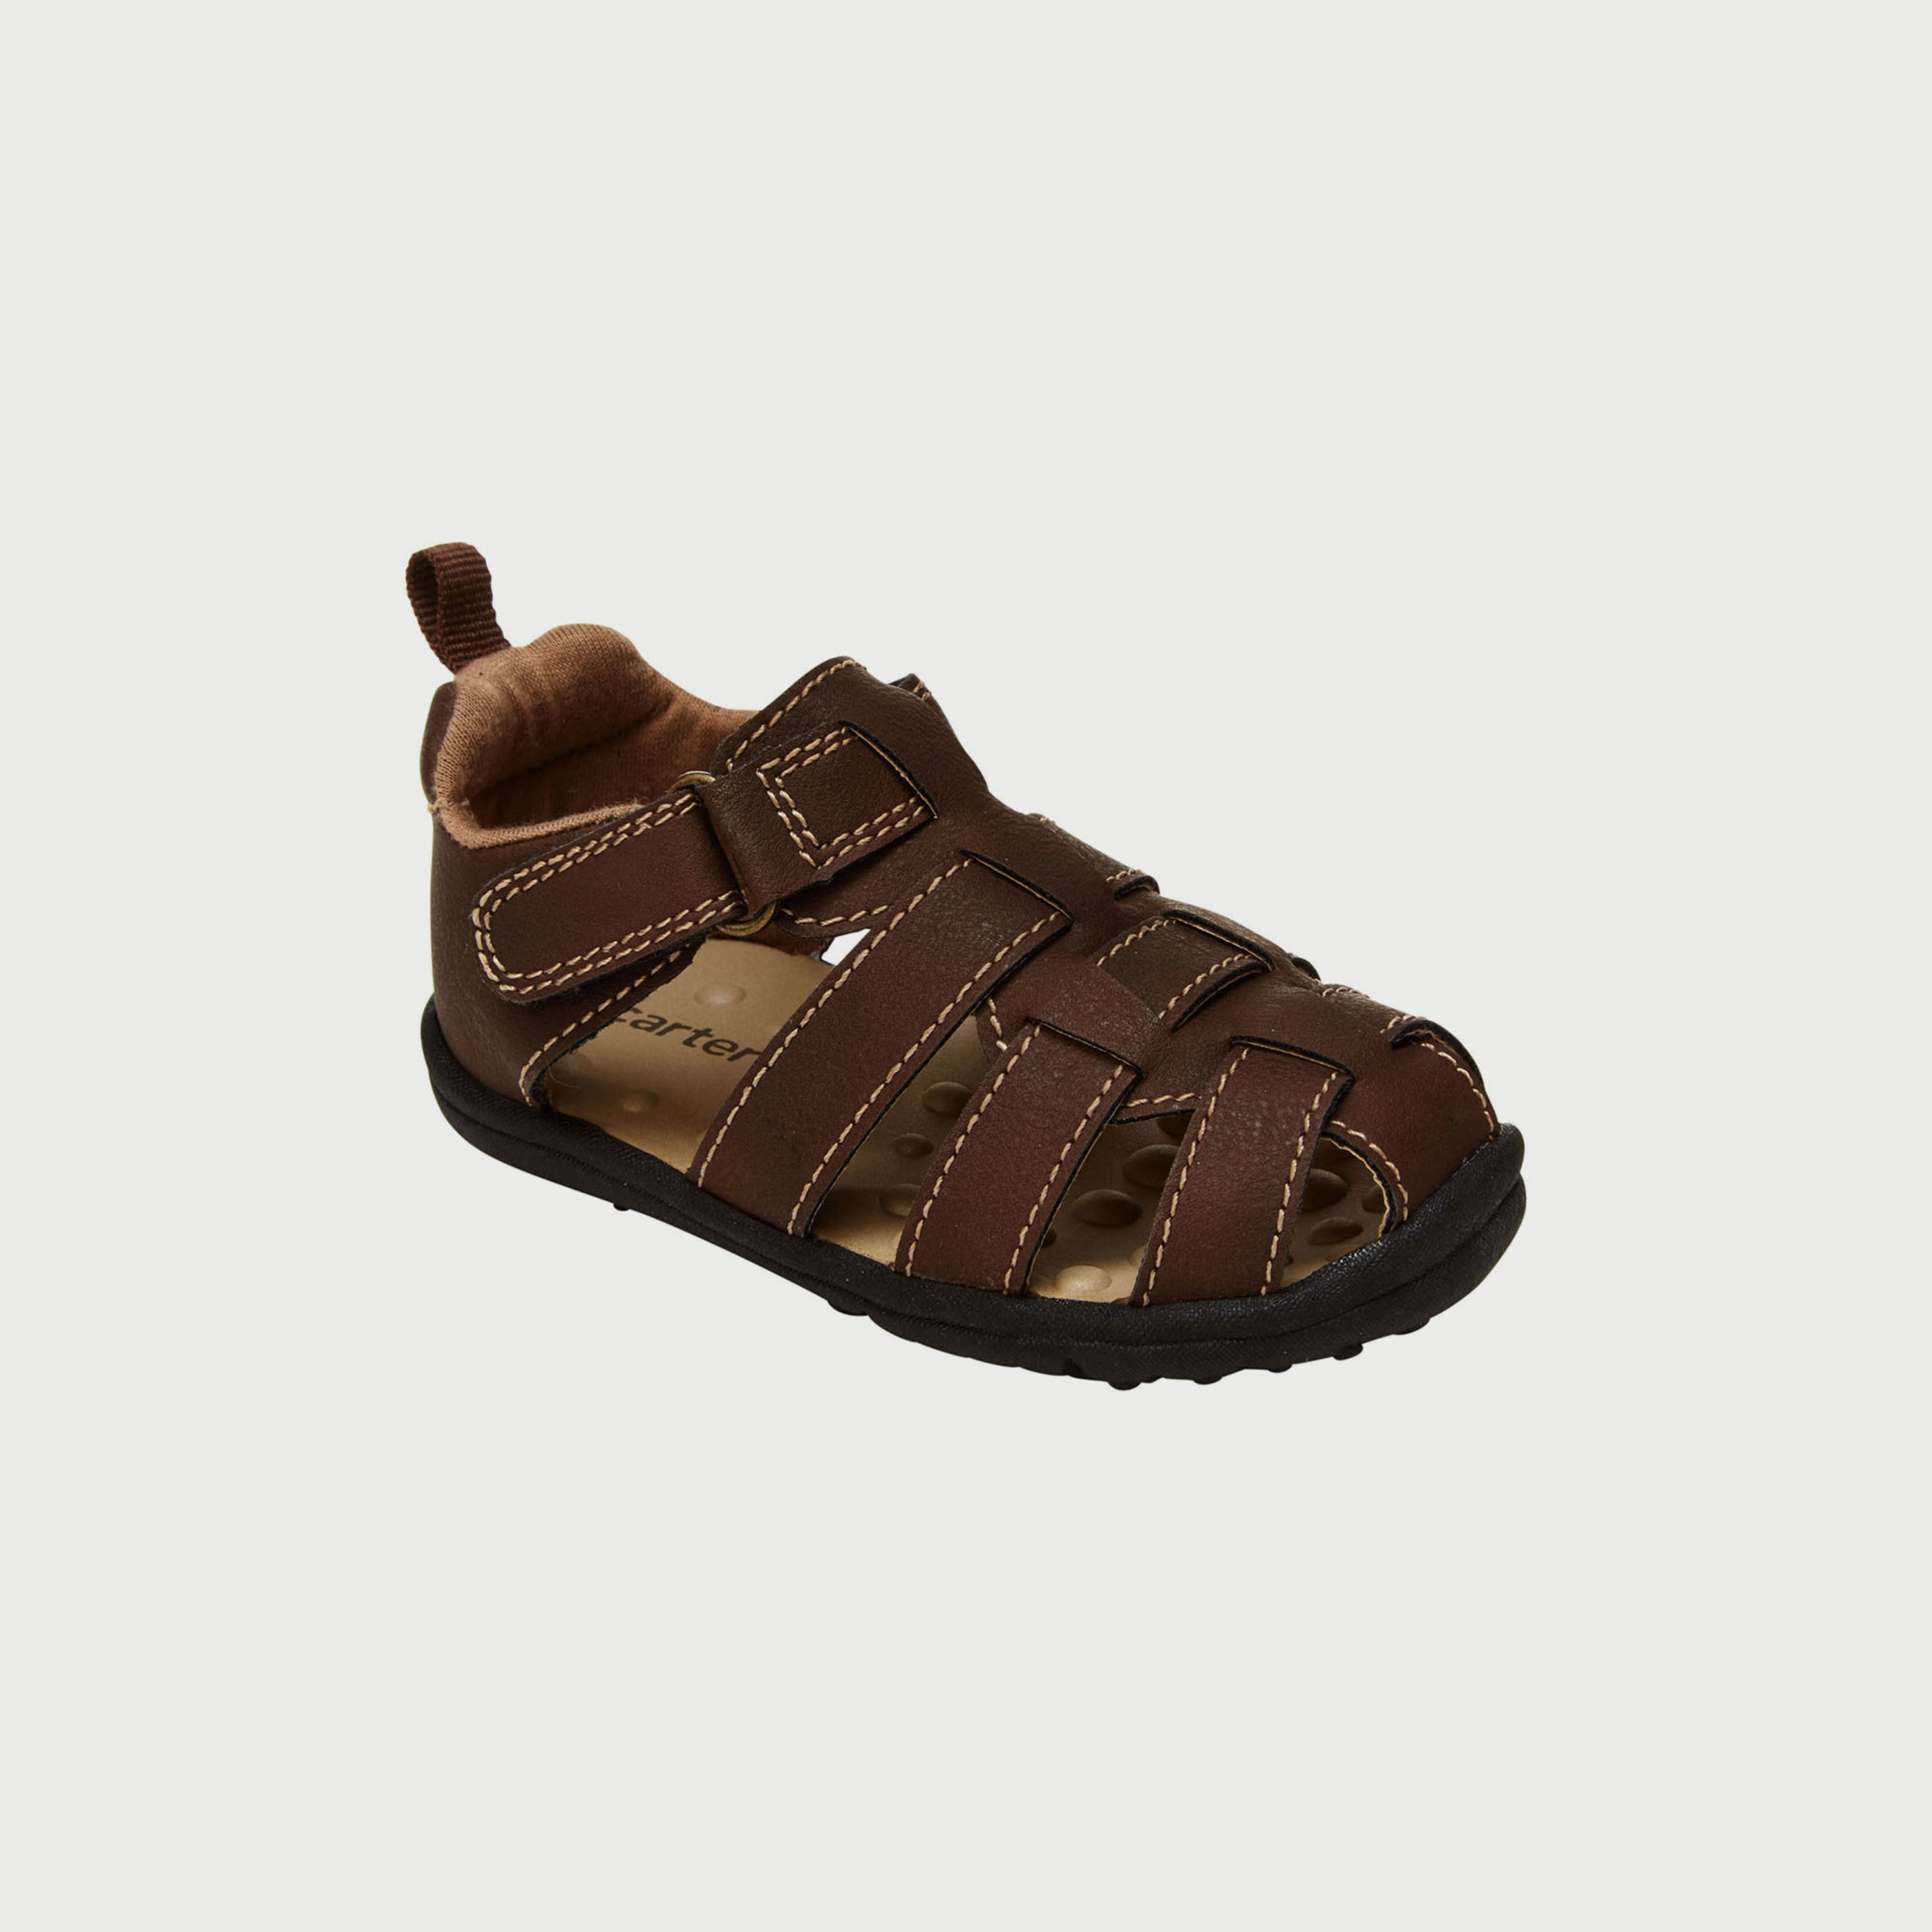 Buy Carters Camo Sandals Online | Babyshop UAE